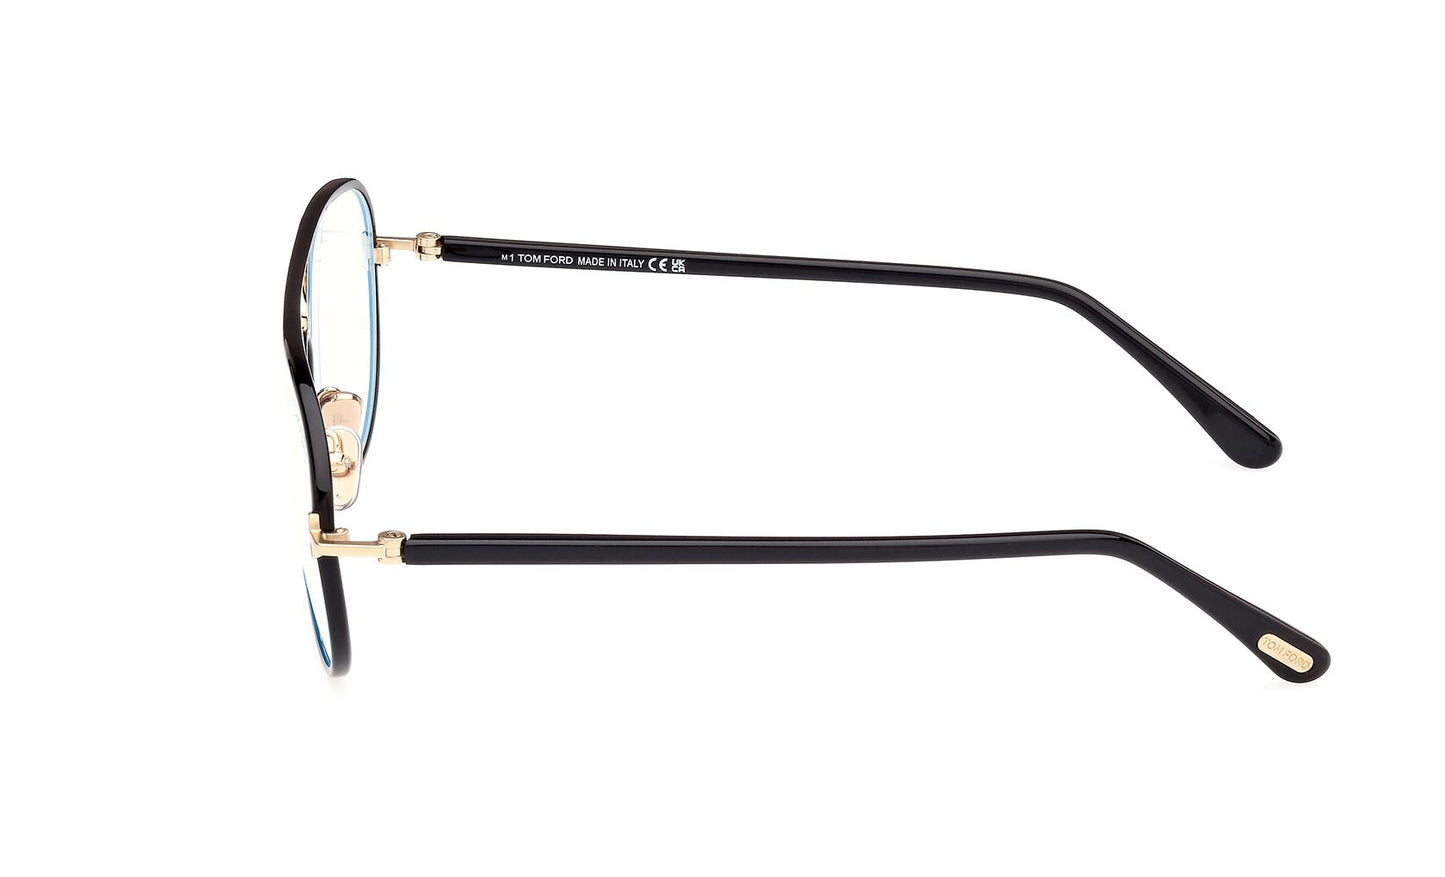 Tom Ford Eyeglasses FT5897/B 001